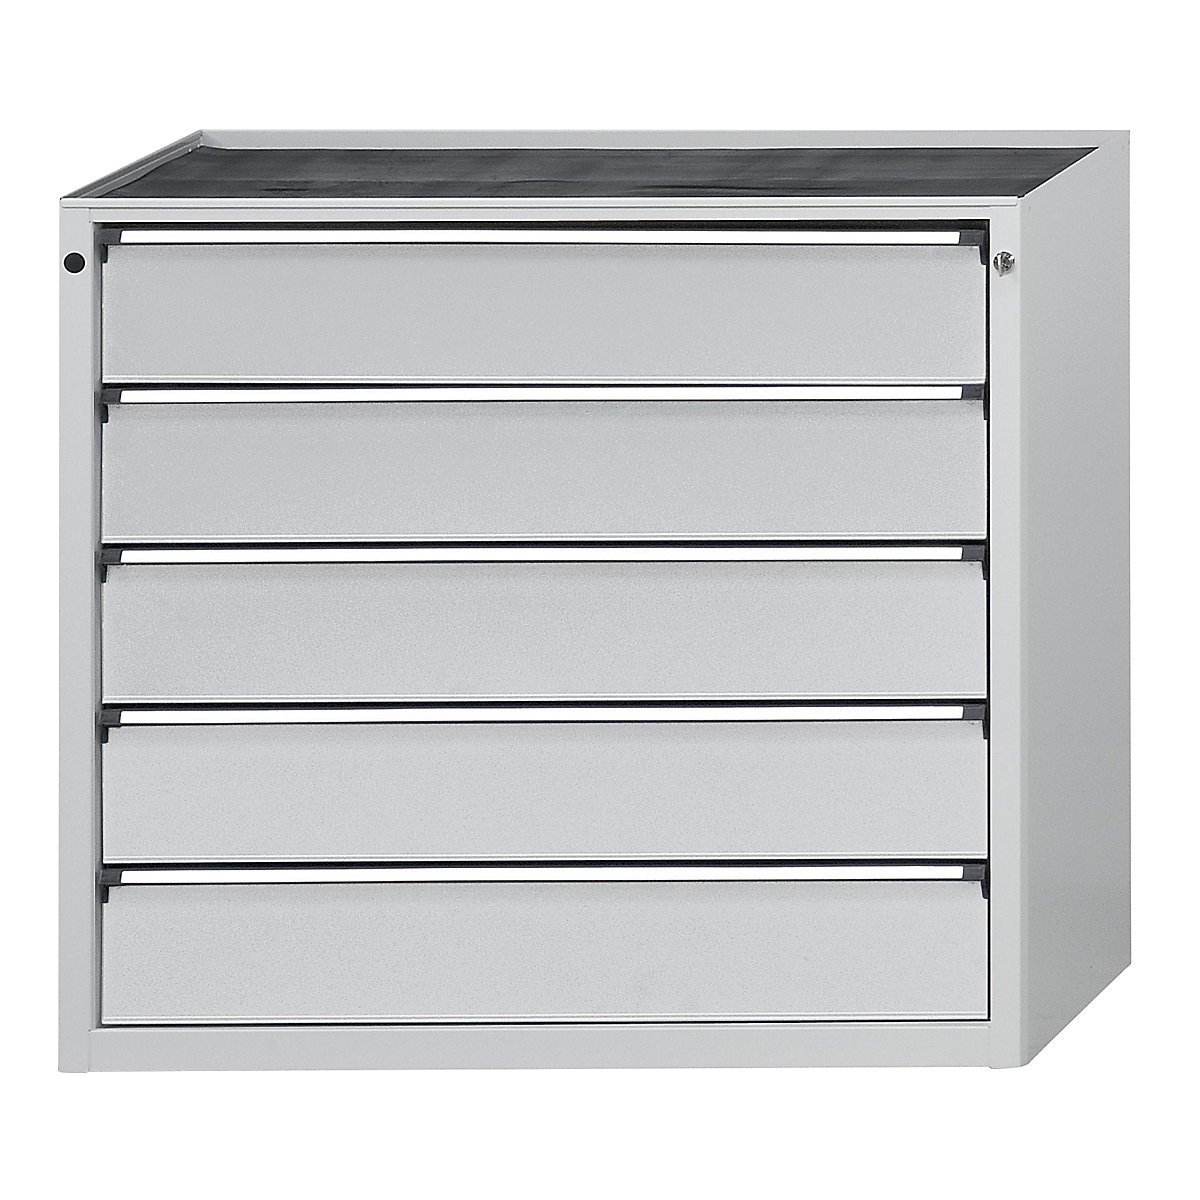 Armoire à tiroirs – ANKE, l x p 1060 x 675 mm, charge max. tiroirs 200 kg, 5 tiroirs, hauteur 980 mm, façade gris clair-14